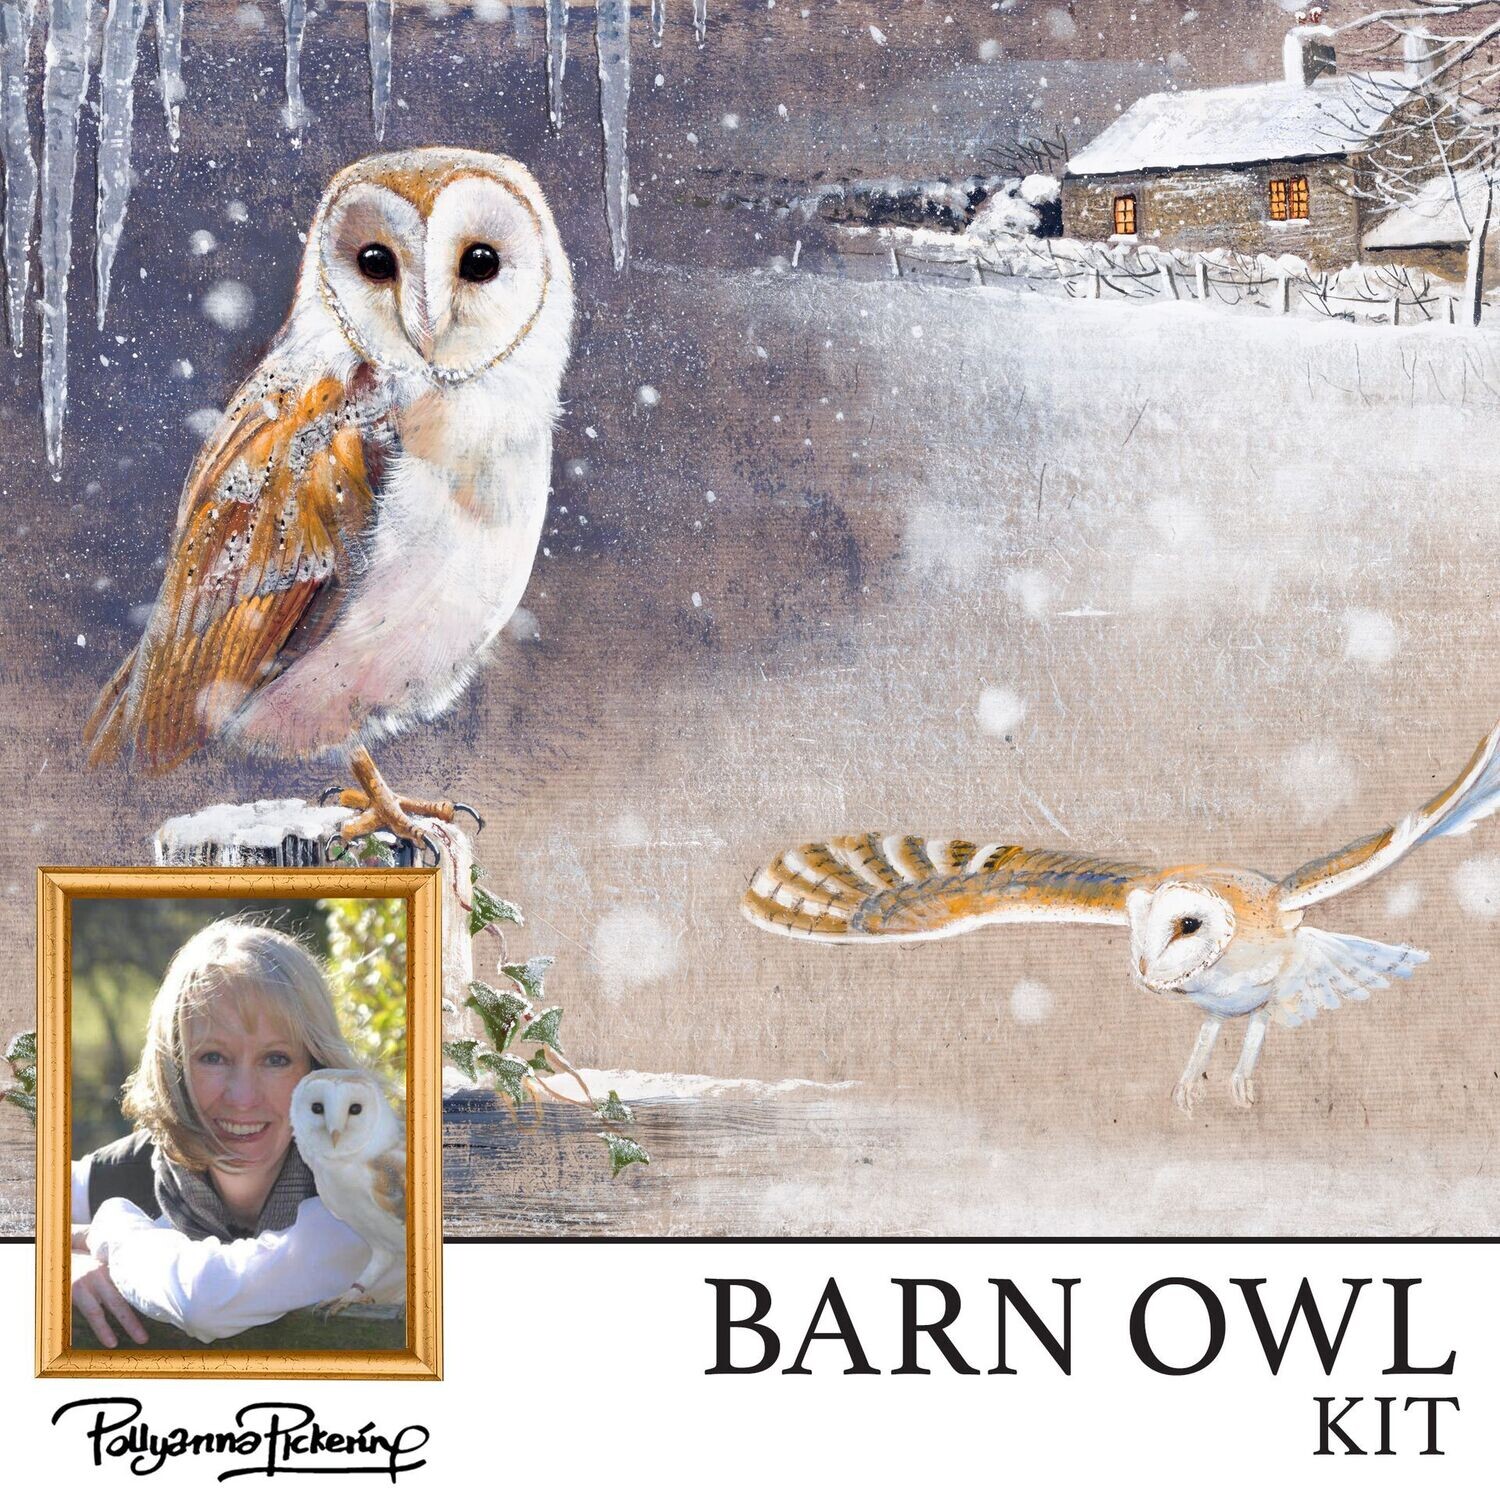 Pollyanna Pickering's Barn Owl Digital Kit